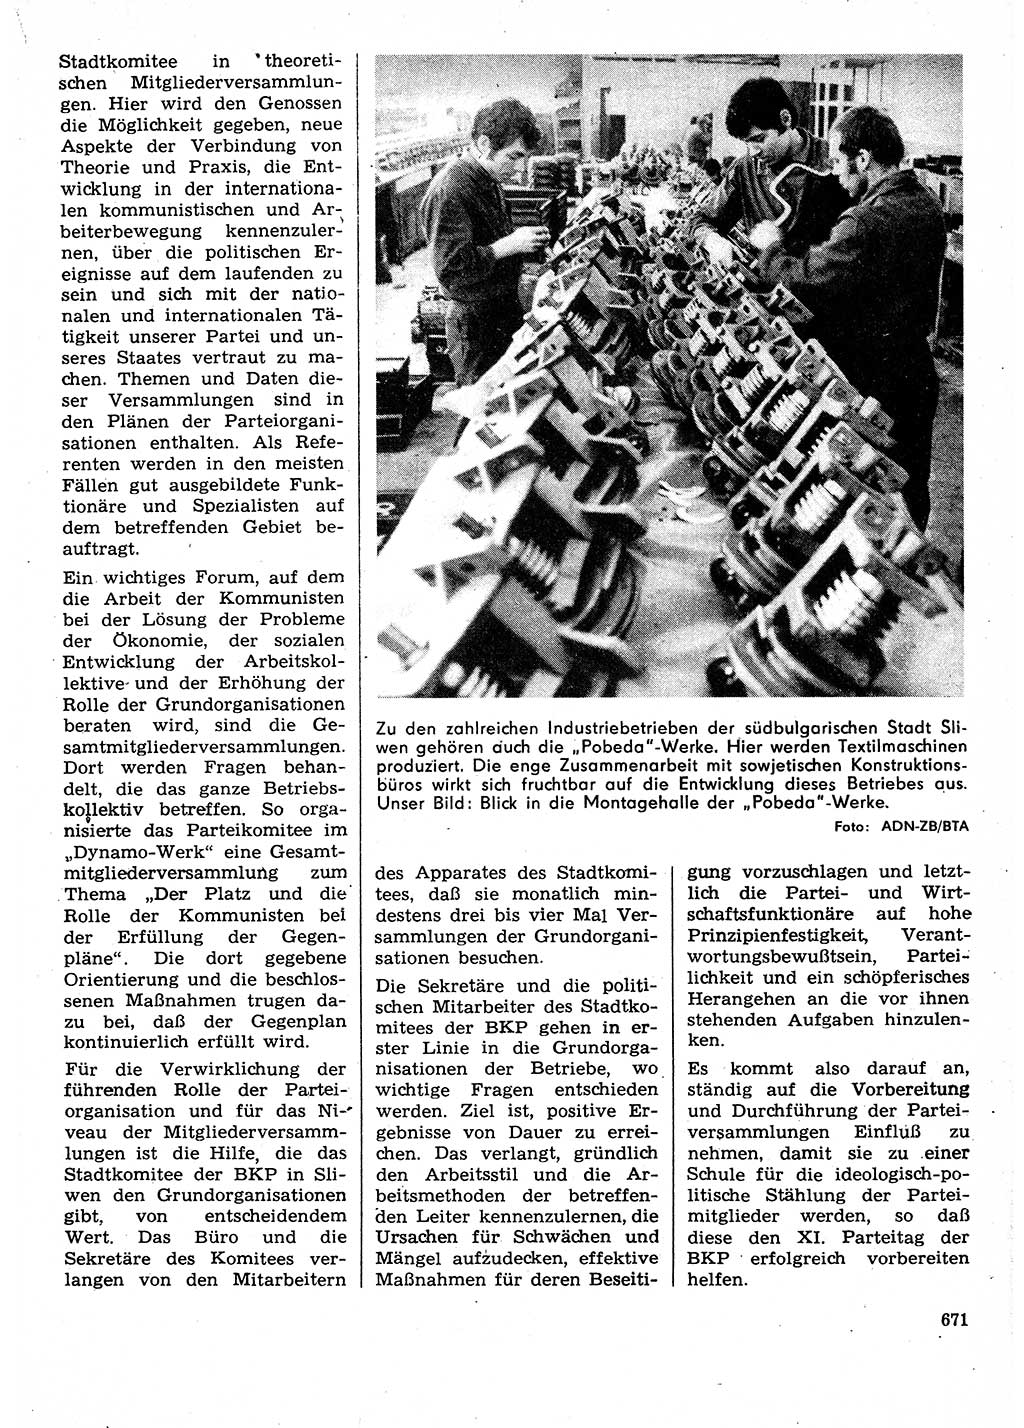 Neuer Weg (NW), Organ des Zentralkomitees (ZK) der SED (Sozialistische Einheitspartei Deutschlands) für Fragen des Parteilebens, 30. Jahrgang [Deutsche Demokratische Republik (DDR)] 1975, Seite 671 (NW ZK SED DDR 1975, S. 671)